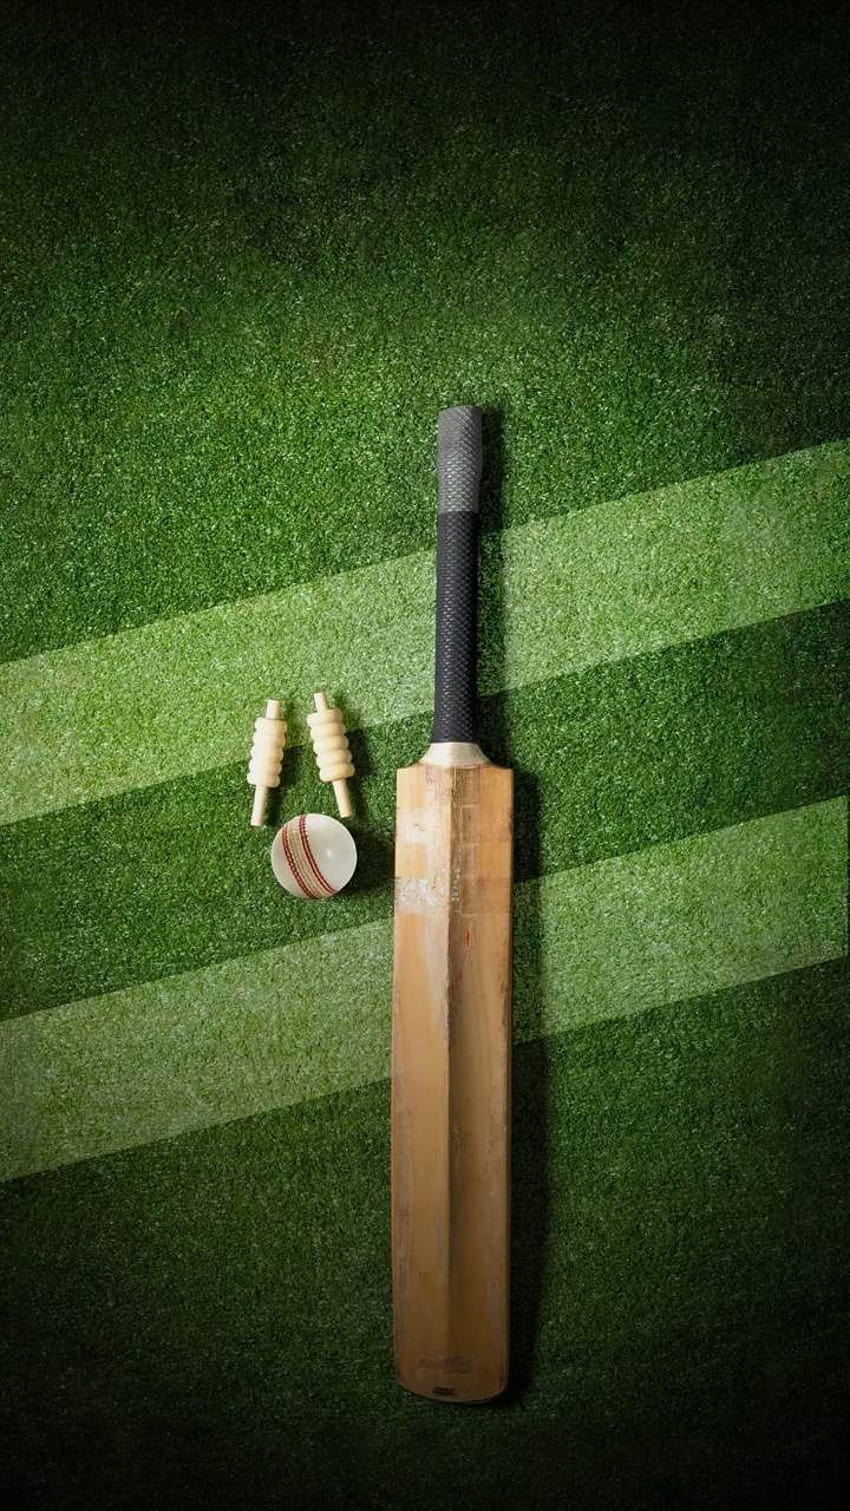 CRICKET de Rishidevmohanty, bate y pelota de cricket fondo de pantalla del teléfono